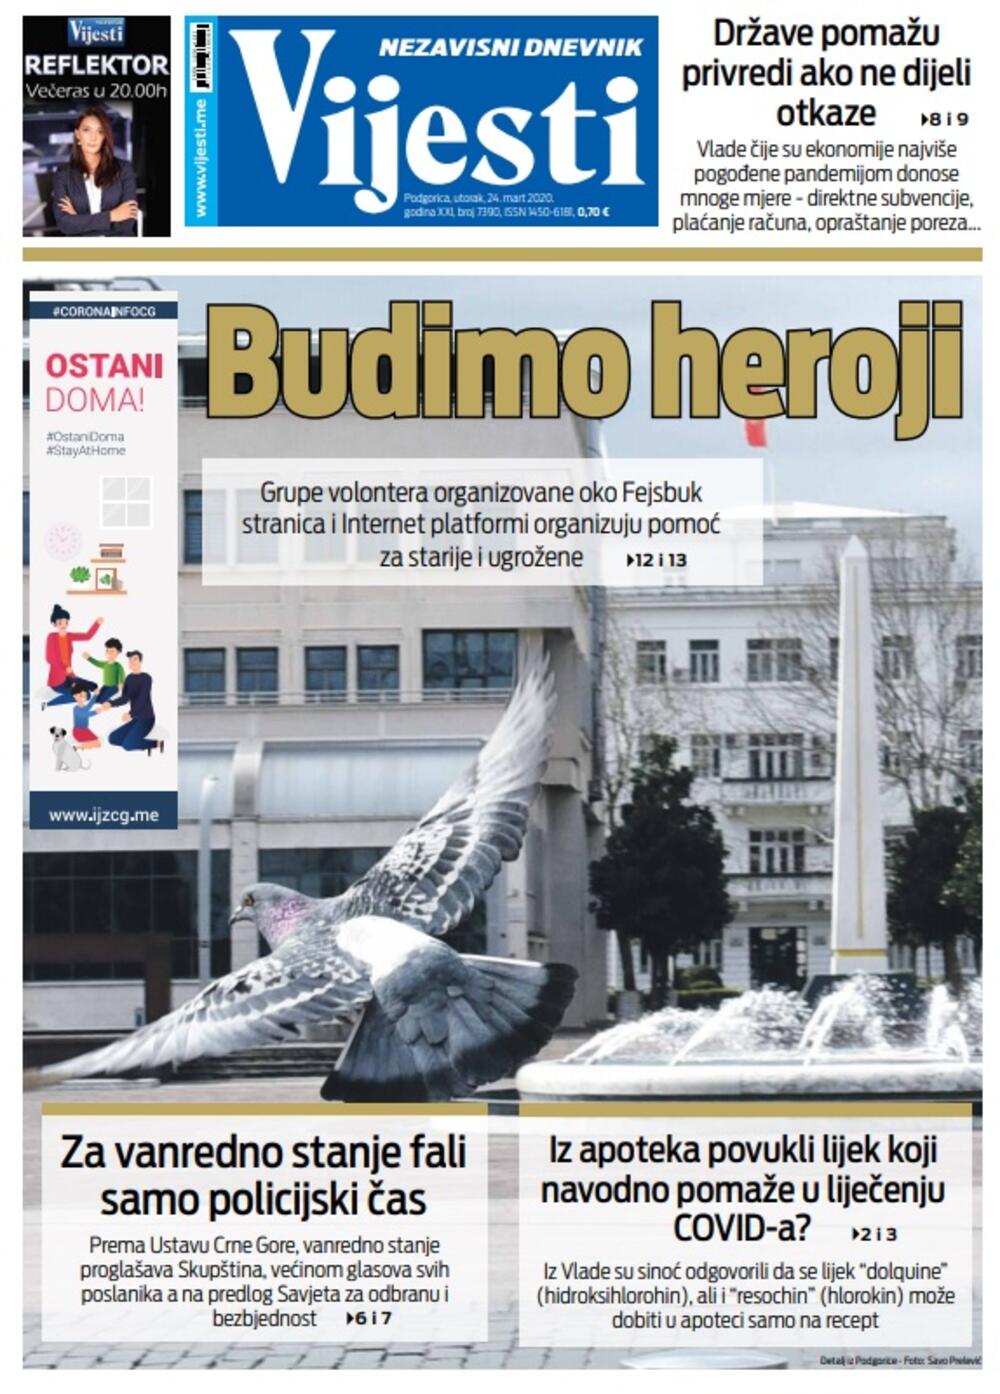 Naslovna strana "Vijesti" za utorak 24. mart 2020. godine, Foto: "Vijesti